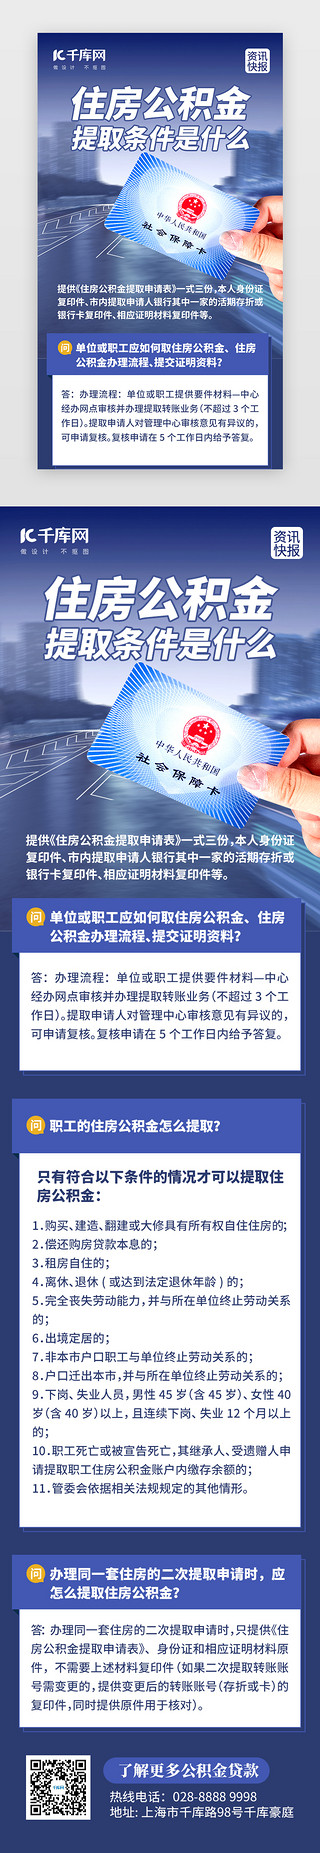 中奖快报UI设计素材_住房公积金提现资讯H5创意蓝色社保卡